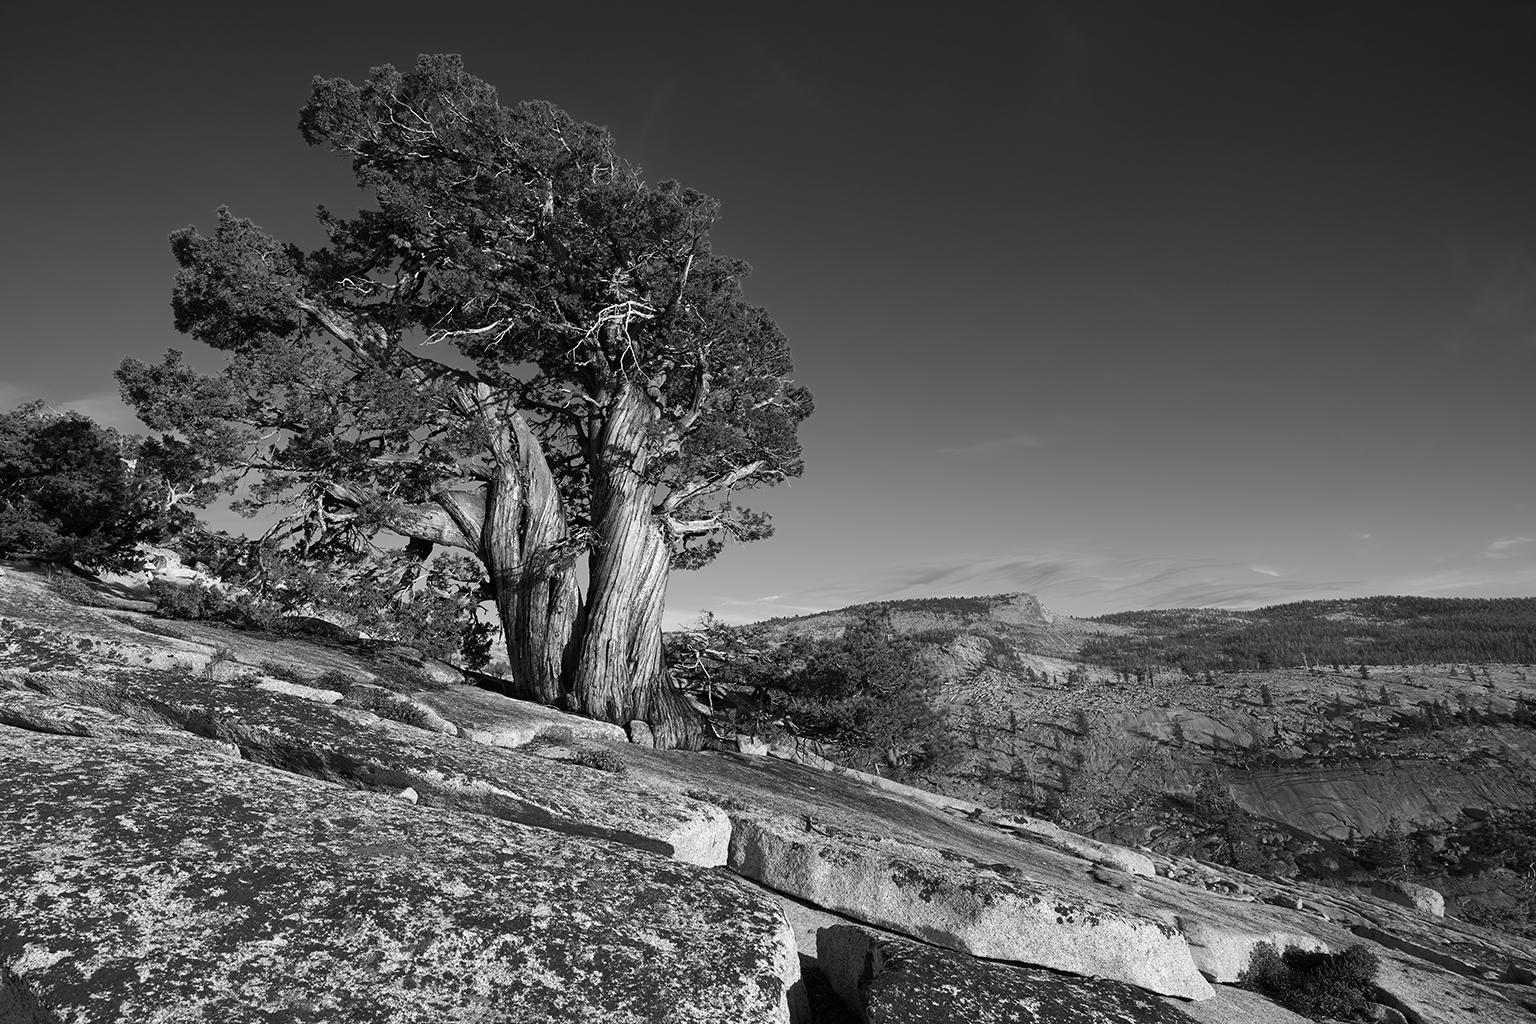 Tree Study II – Großformatige b/w-Fotografie eines einsamen antiken Baumes in Landschaft